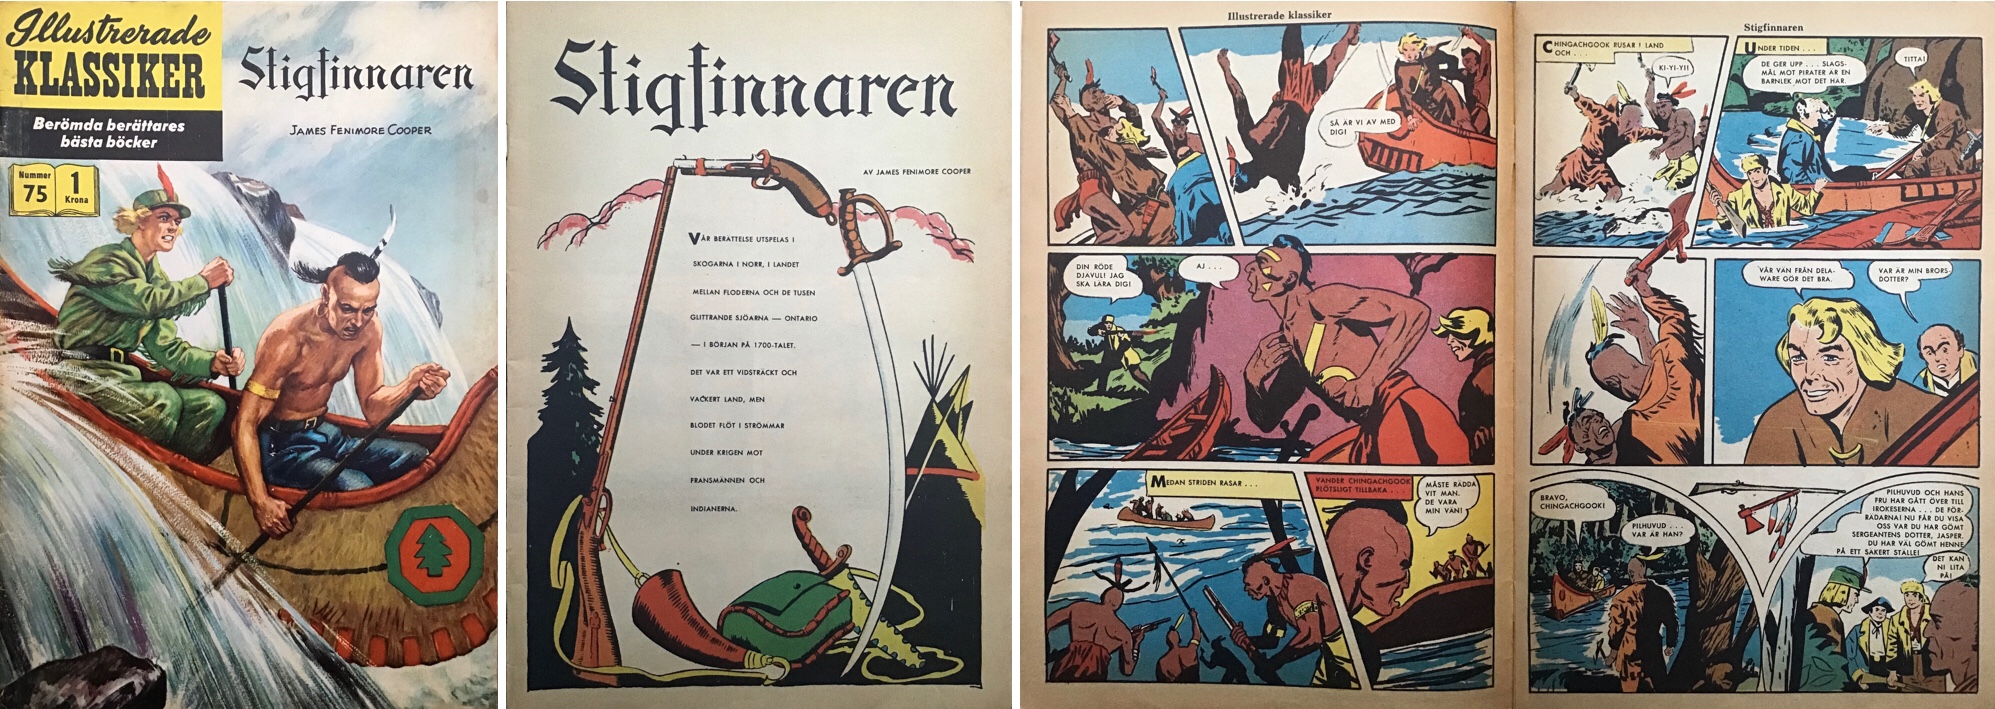 Illustrerade klassiker 71-80: Omslag, förstasida och ett uppslag ur IK nr 76. ©IK/Gilberton